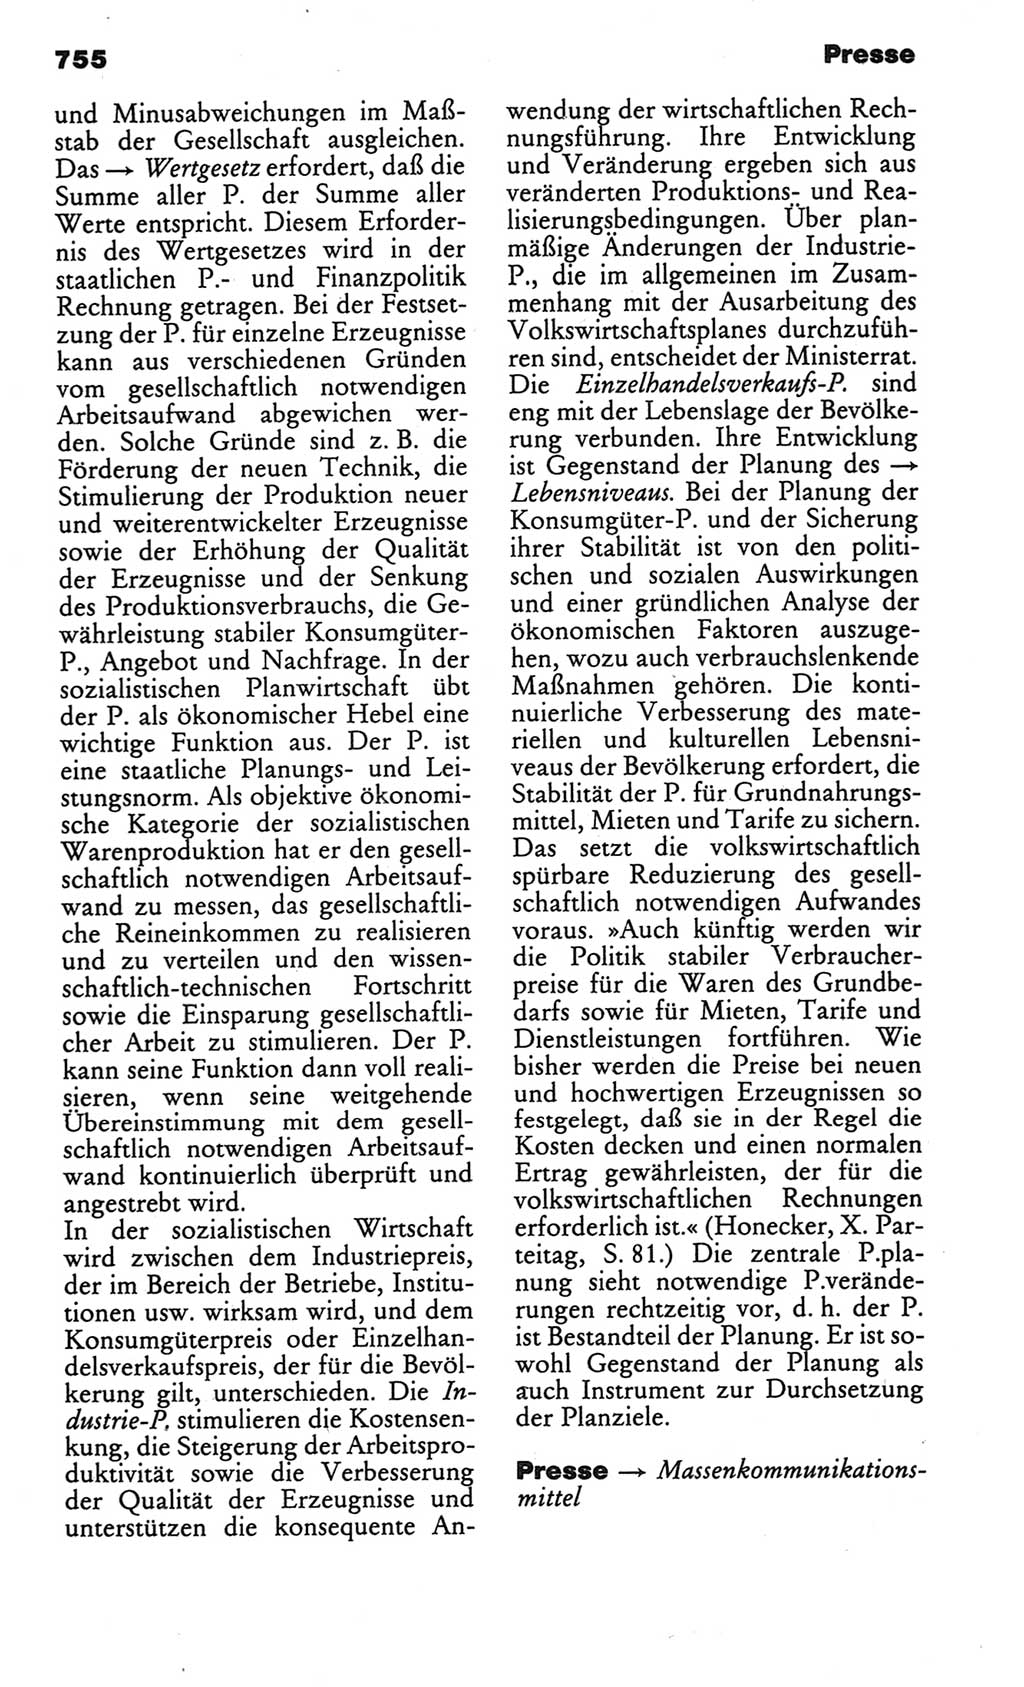 Kleines politisches Wörterbuch [Deutsche Demokratische Republik (DDR)] 1986, Seite 755 (Kl. pol. Wb. DDR 1986, S. 755)